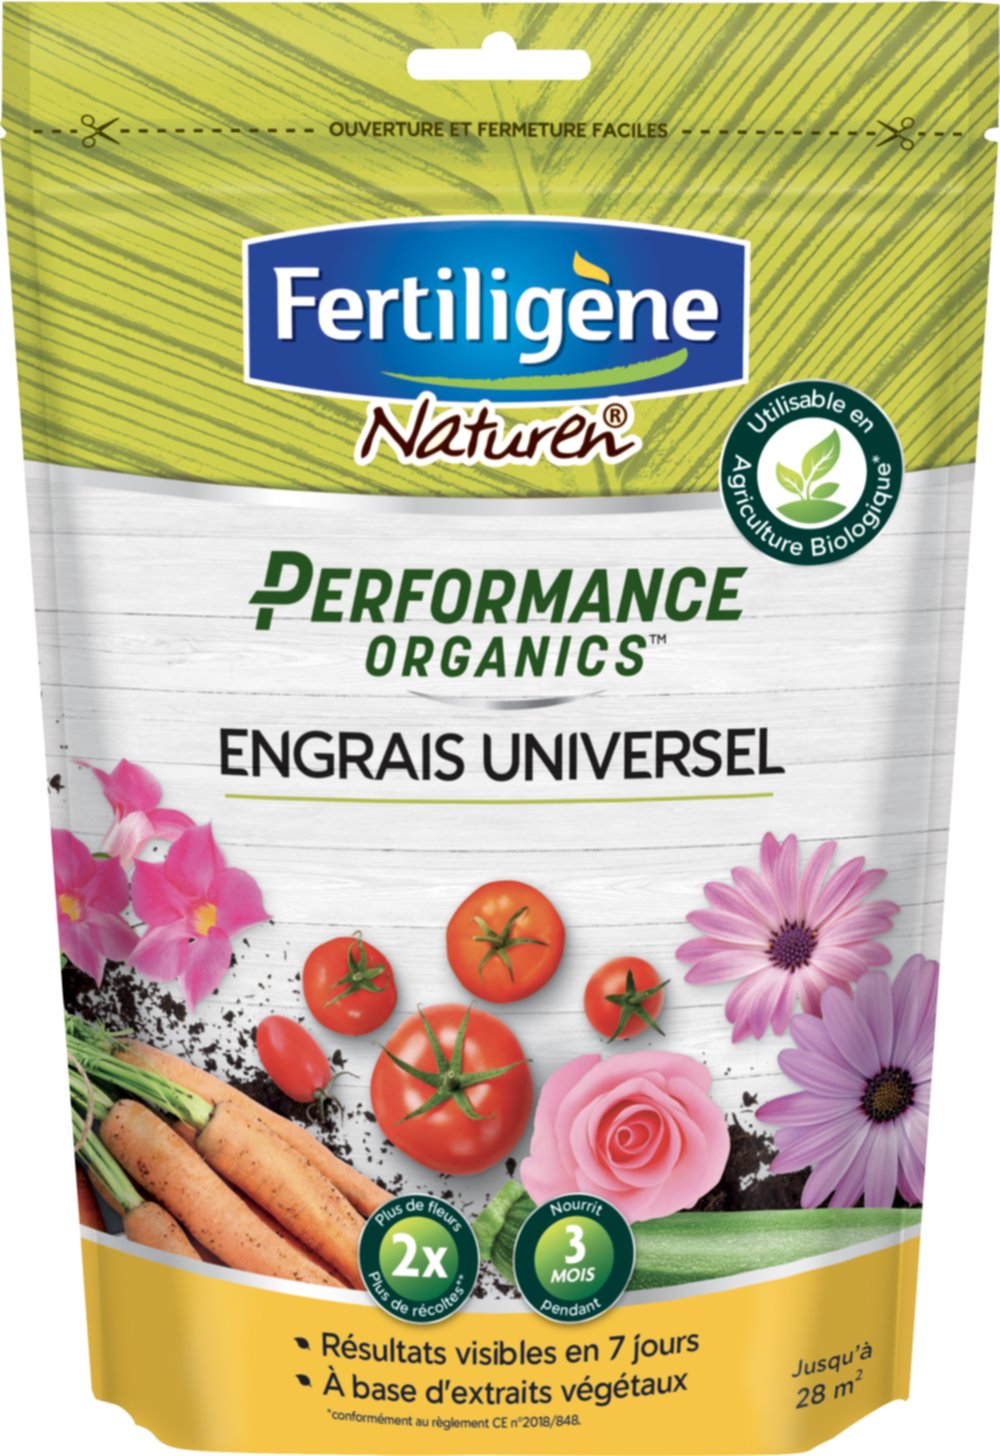 Performance organics Engrais universel uab 700g